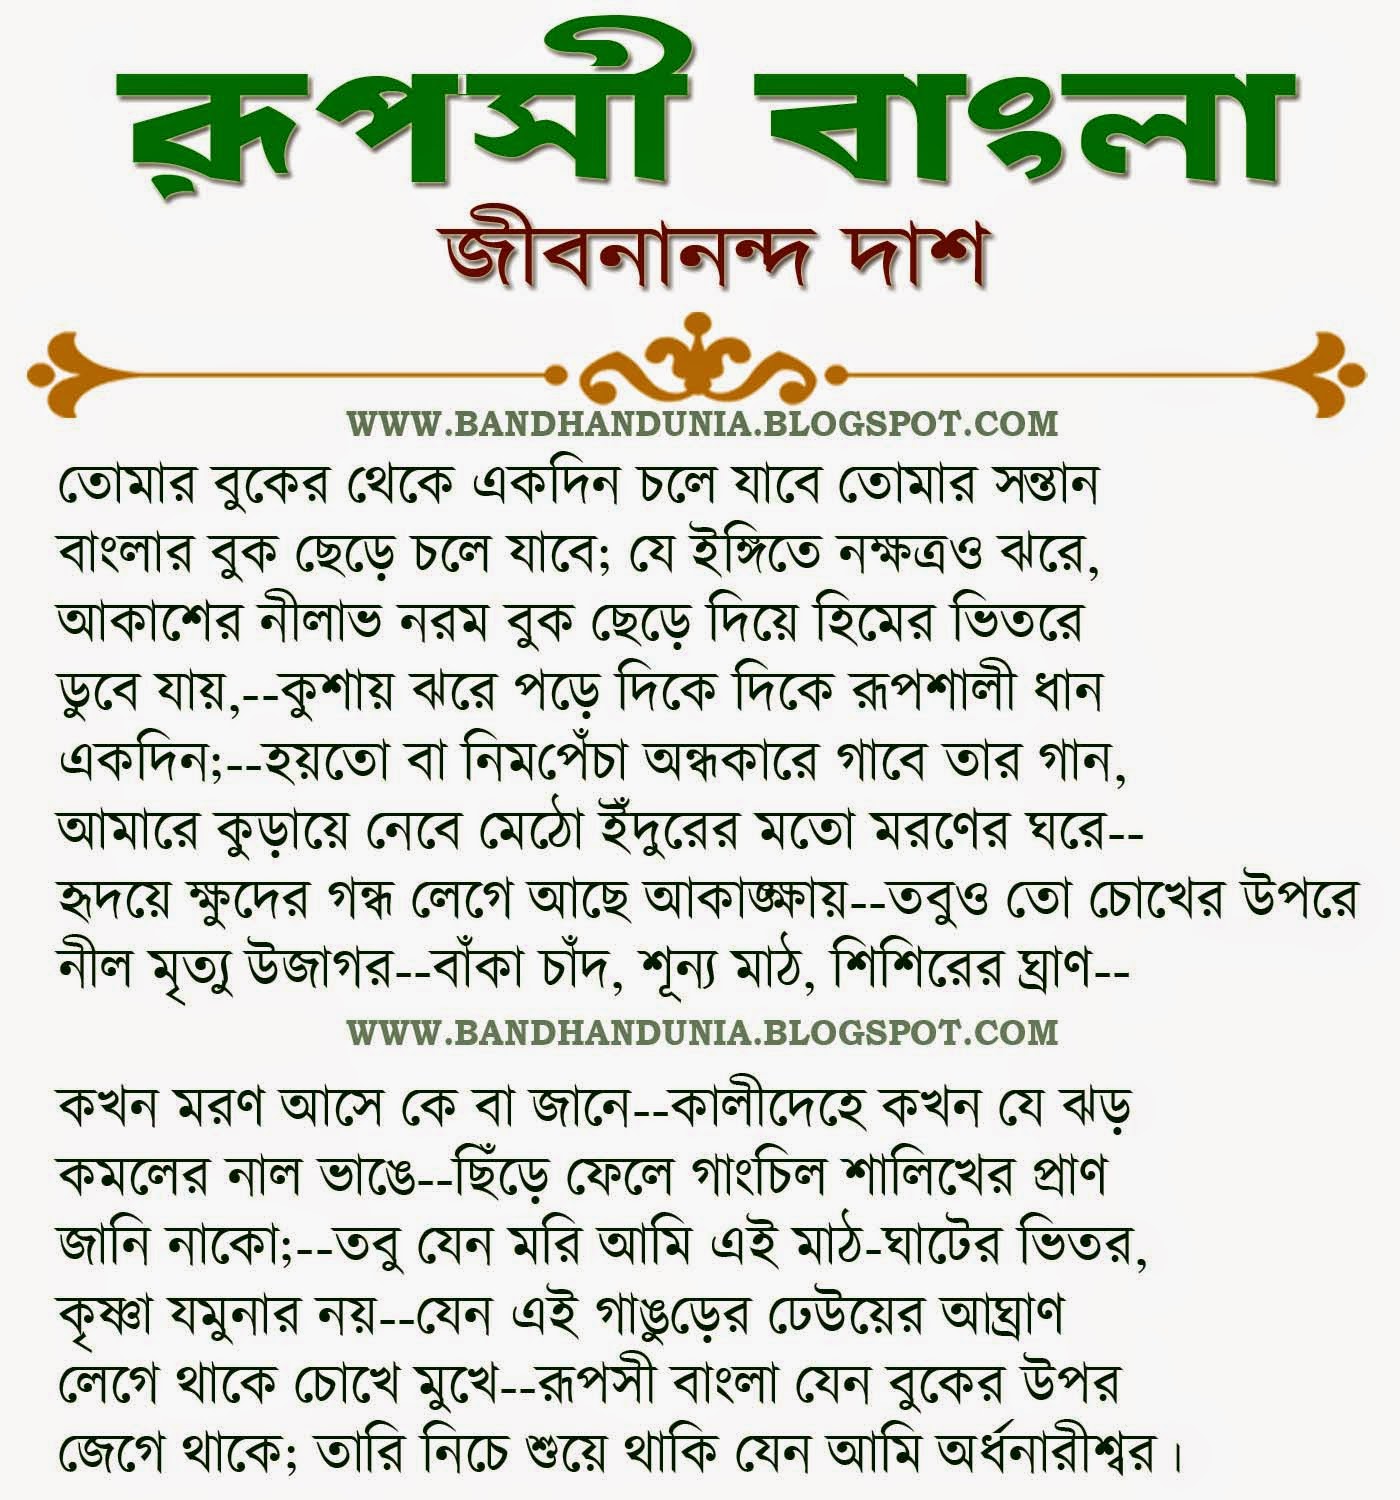 bangla kobita fondos de escritorio descargar,texto,fuente